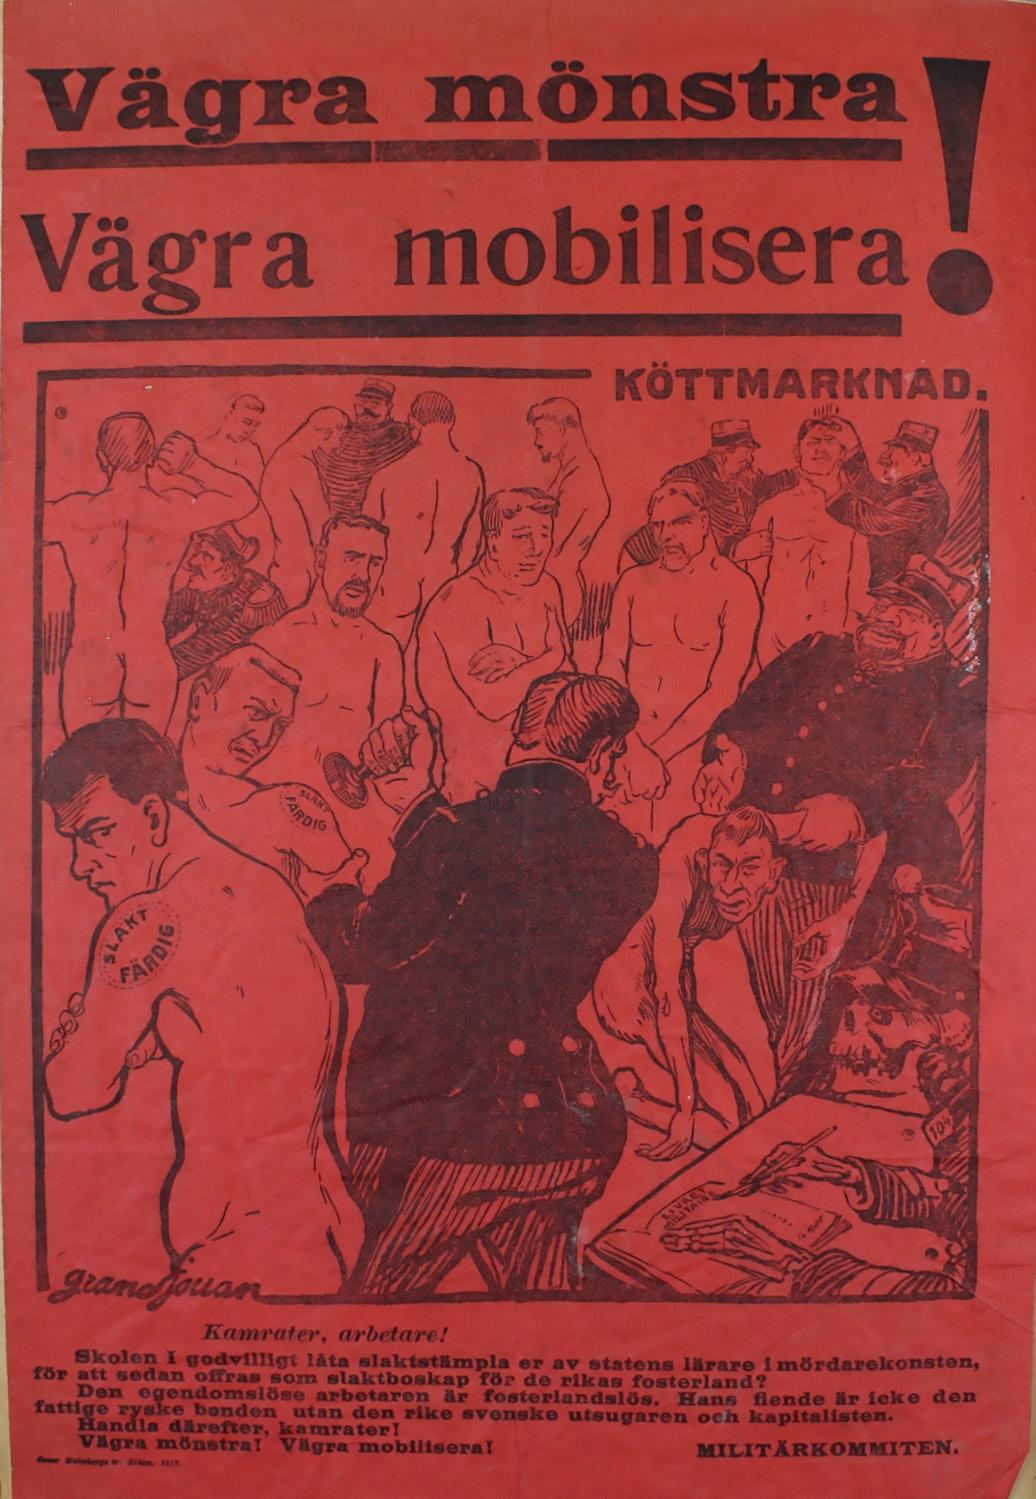 Imagen 6.  Después de Jules-Félix Grandjouan. Vägra Mönstra/Vägra mobilisera! Cartel.  33x24 cm. Estocolmo, 1913. Stockholmskällan.